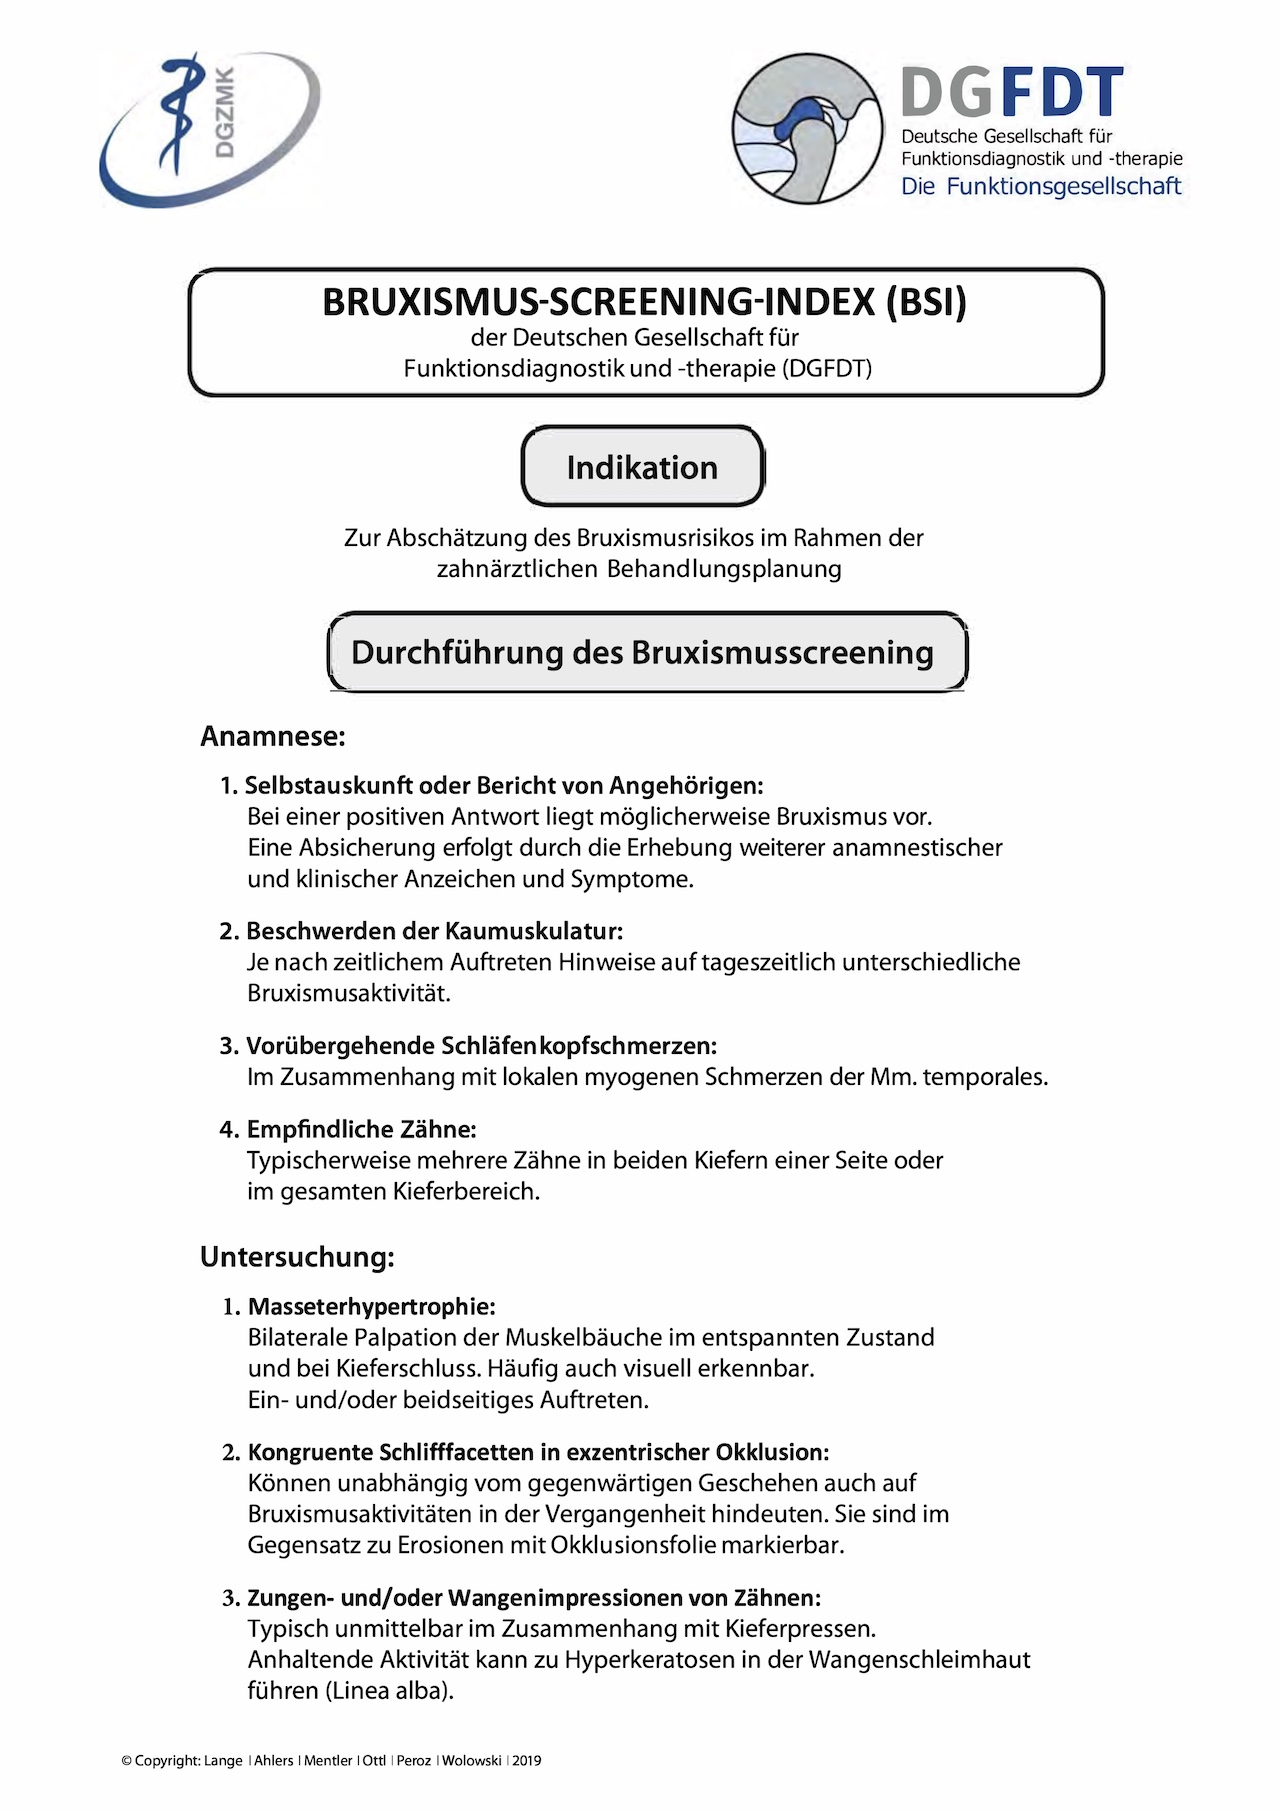 Abb. 1b: Befundbogen Bruxismus-Screening-Index (BSI) der DGFDT, Seite 2 mit der Anleitung zur Durchführung der Untersuchung.